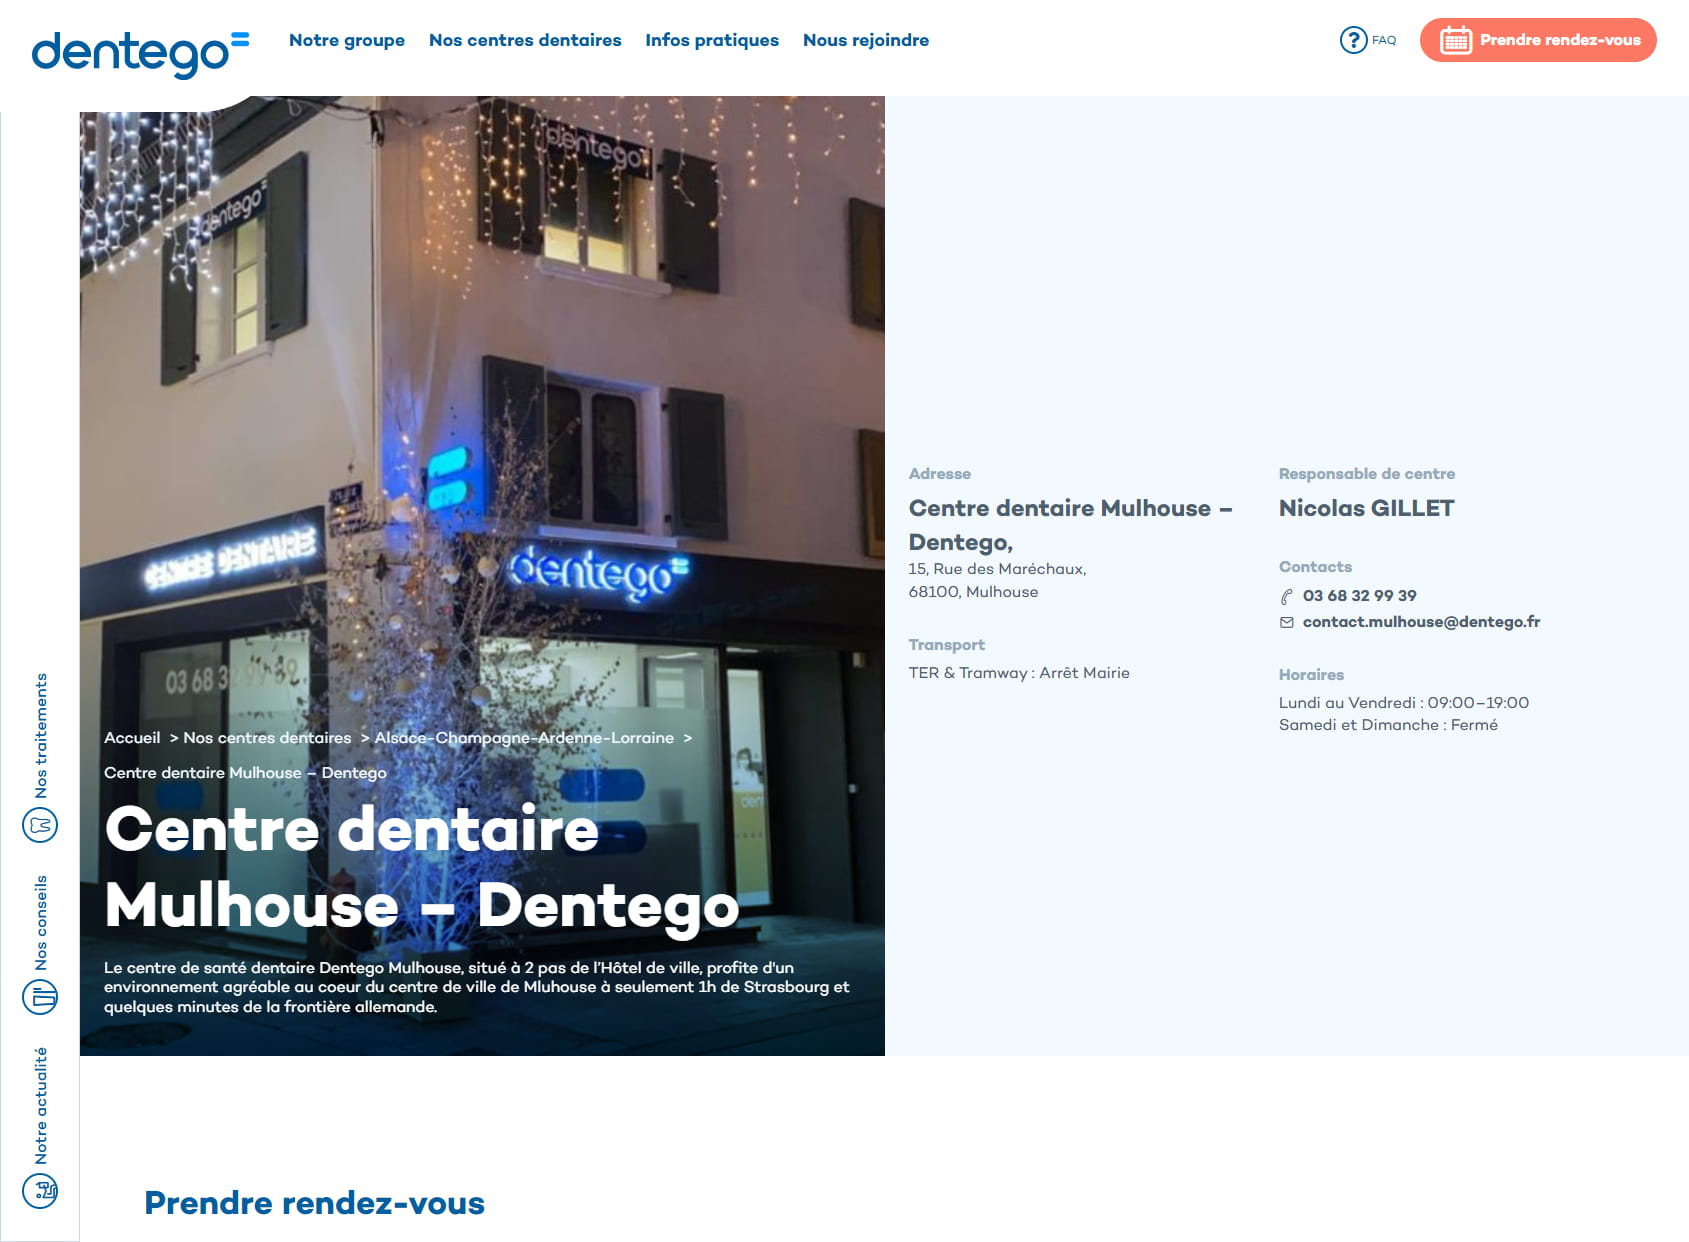 Centre Dentaire Mulhouse : Dentiste Mulhouse - Dentego